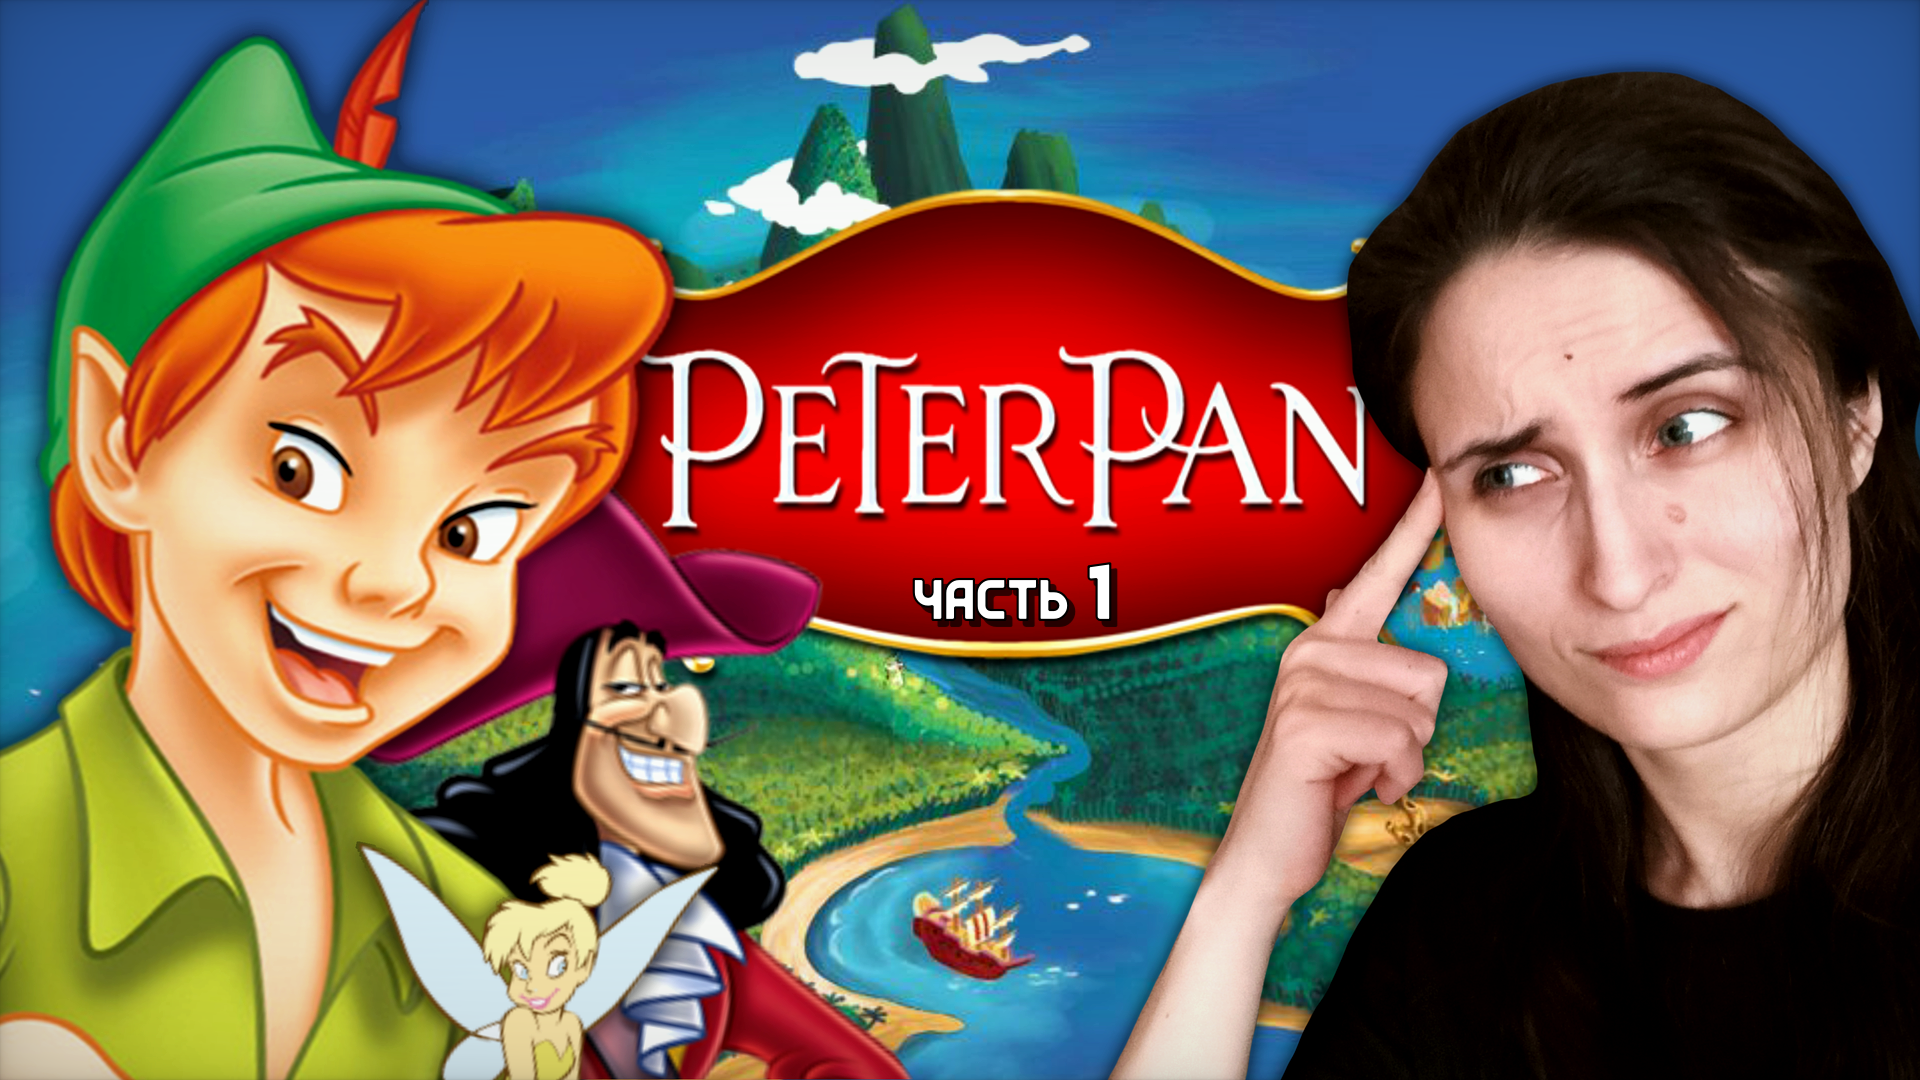 ФЕЯ-ПИРОТЕХНИК И ПЕРВЫЙ ПИРАТСКИЙ БОСС! ➤ Peter Pan: Return to Neverland [часть 1, прохождение PS1]